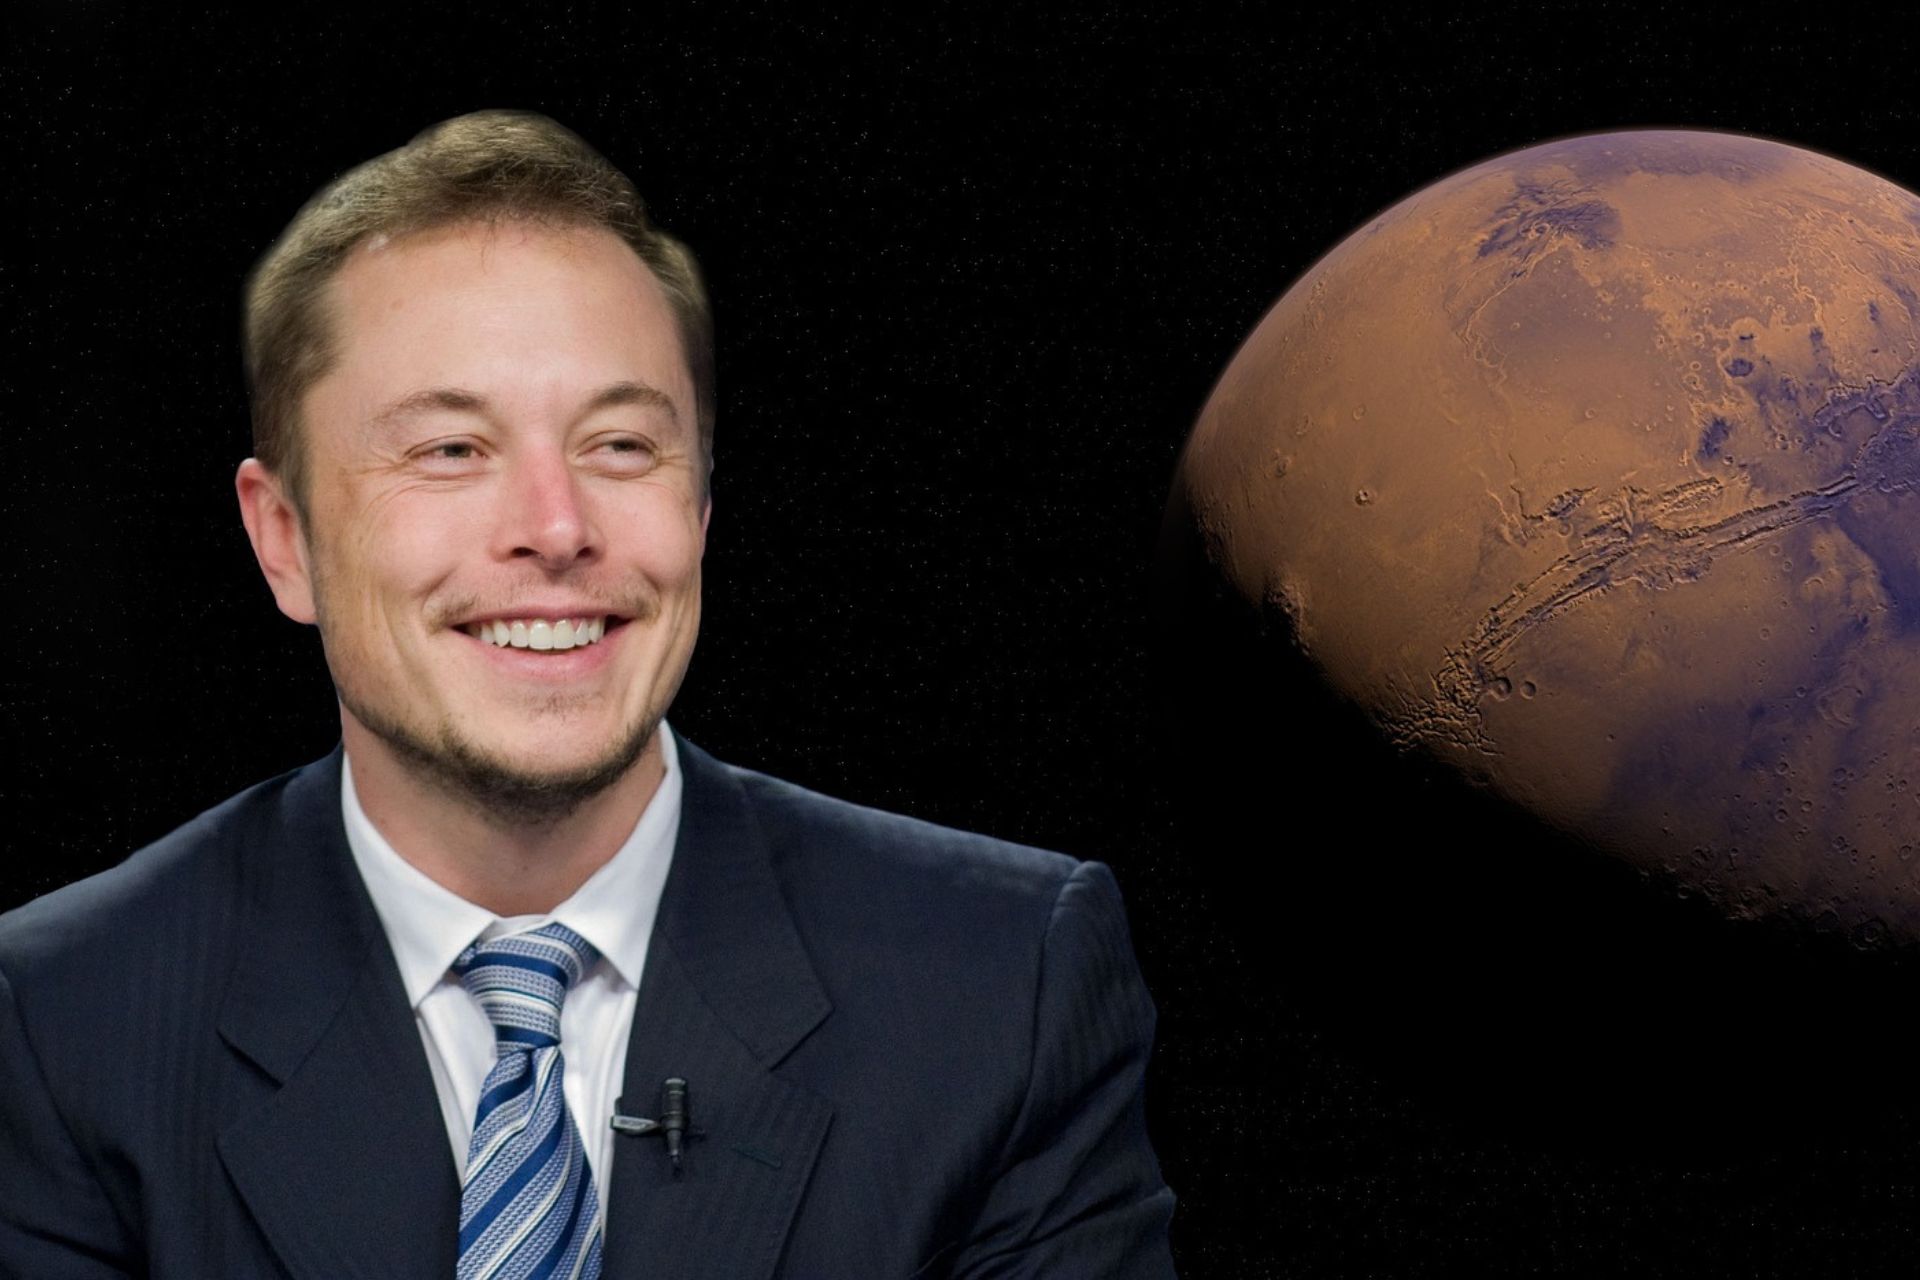 Elon Musk i Twitter: Elon Musk, poznati američki milijarder, izvršni direktor Tesle, proizvođača električnih automobila